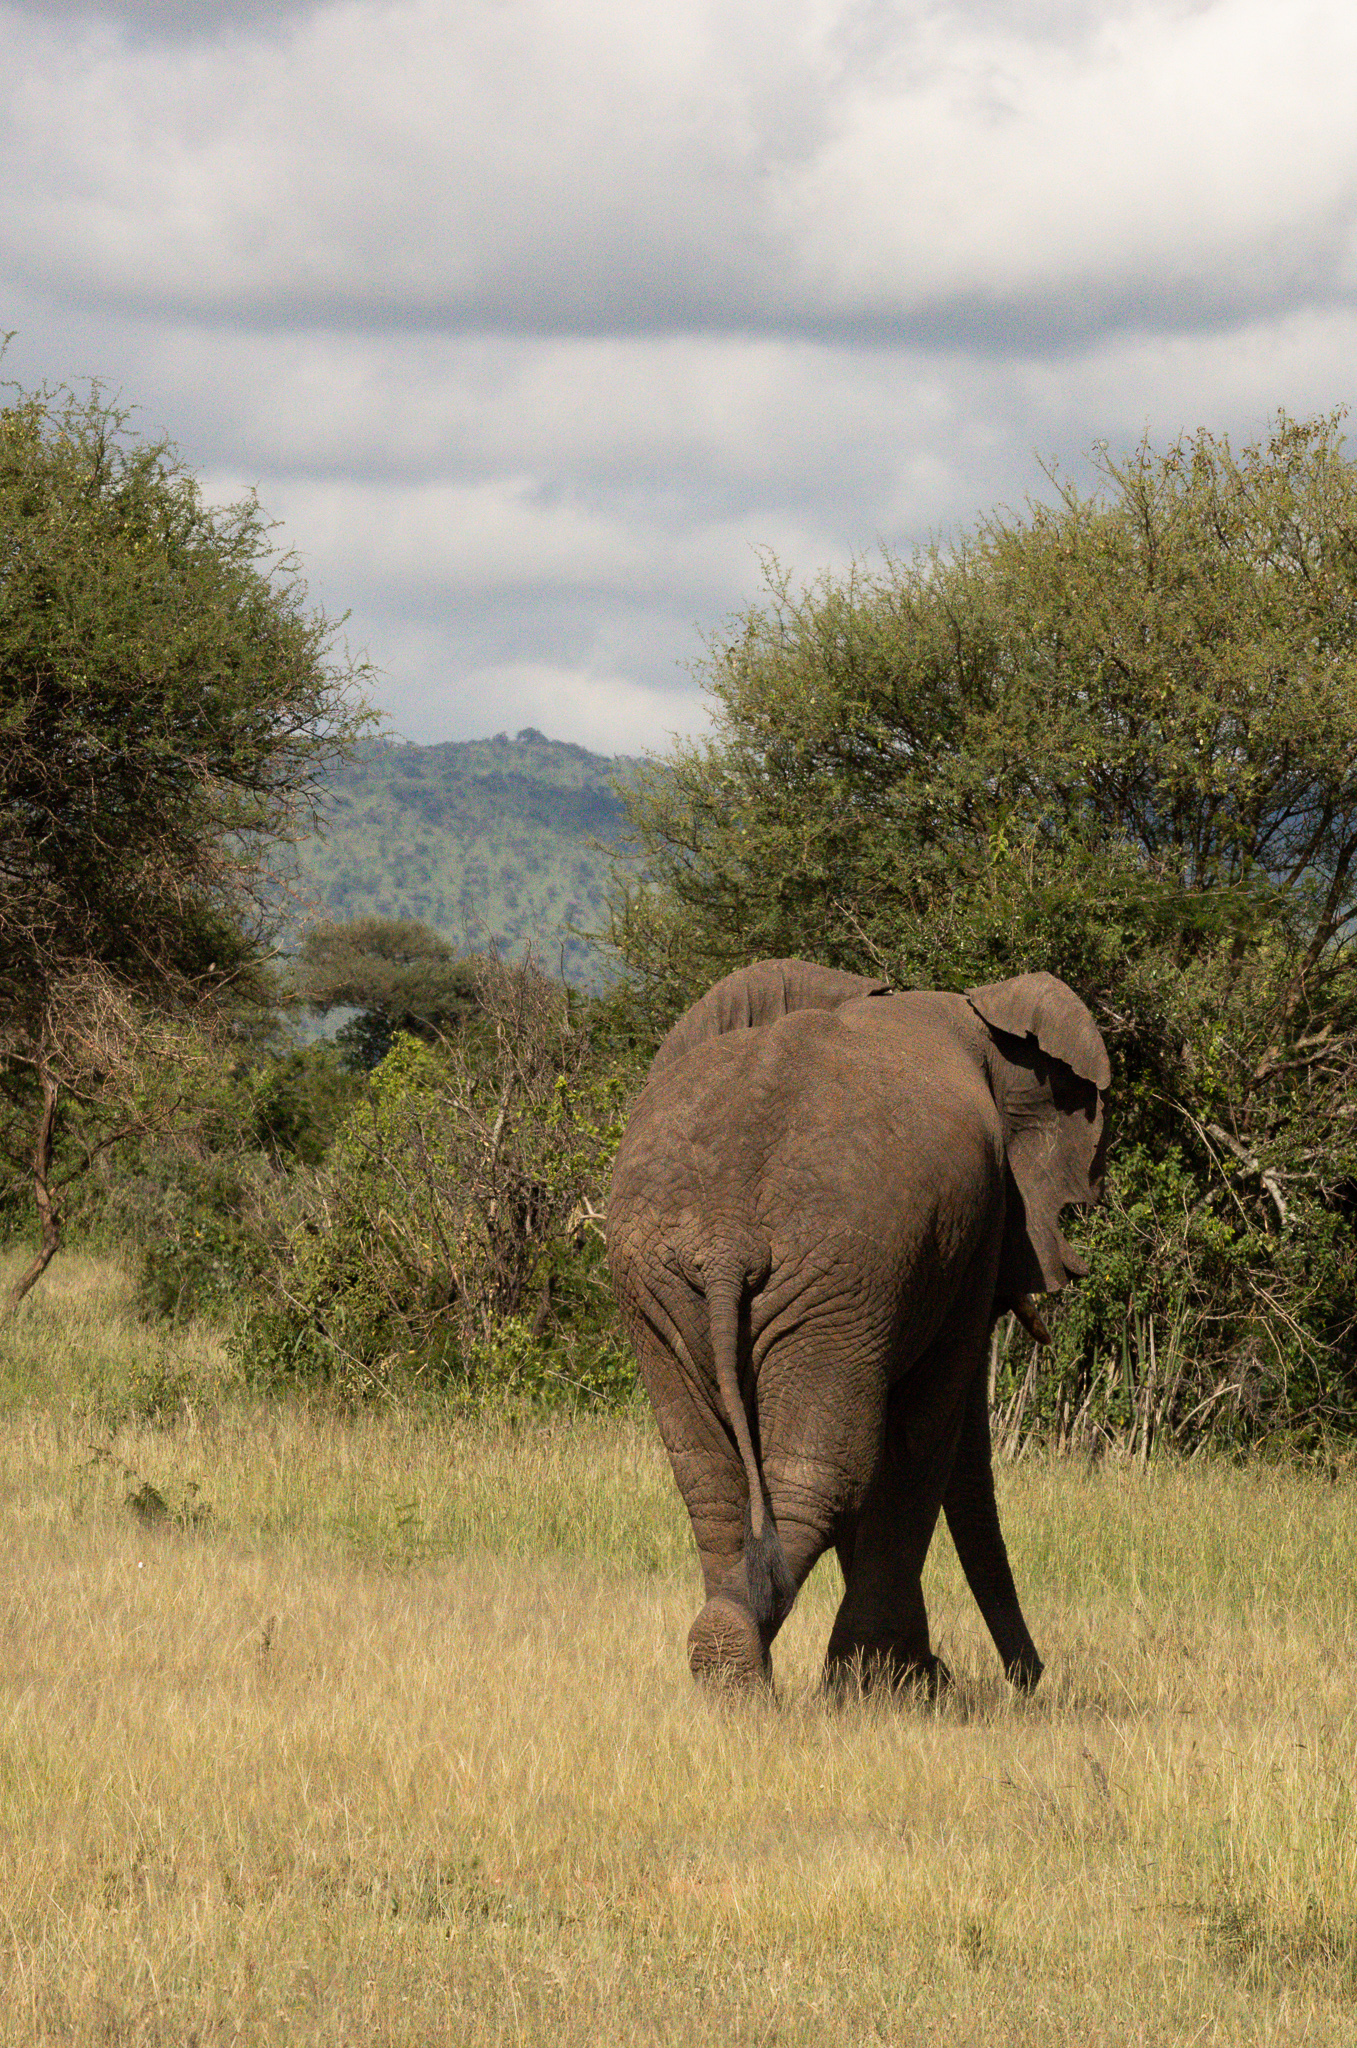 An elephant walking away, seen on a Tanzania safari